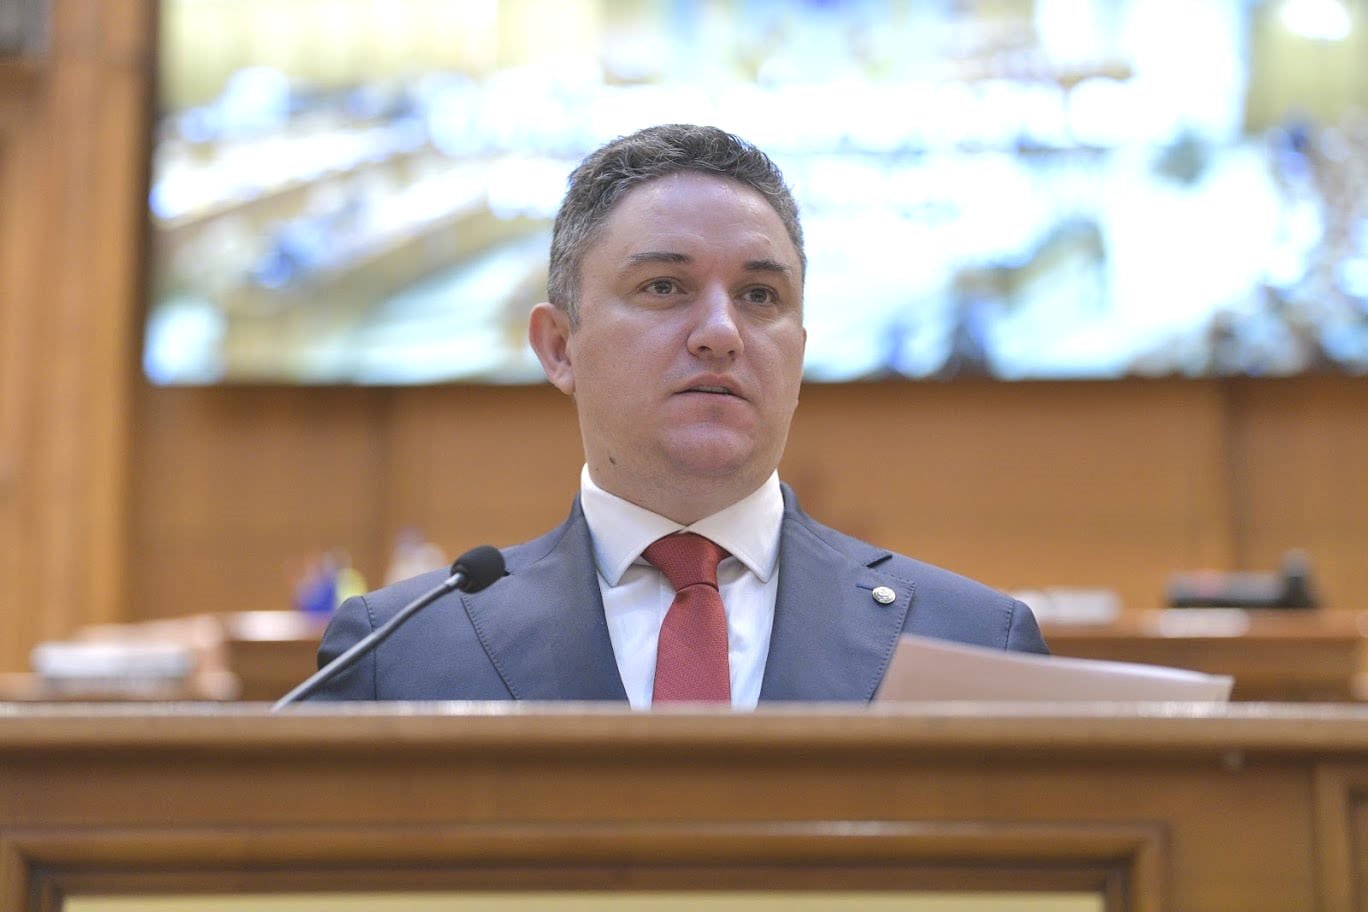  Deputatul PSD Marius Ostaficiuc: ”Românii nu trebuie jupuiţi cu ratele! Statul şi băncile trebuie să ajungă la un compromis!” (P)